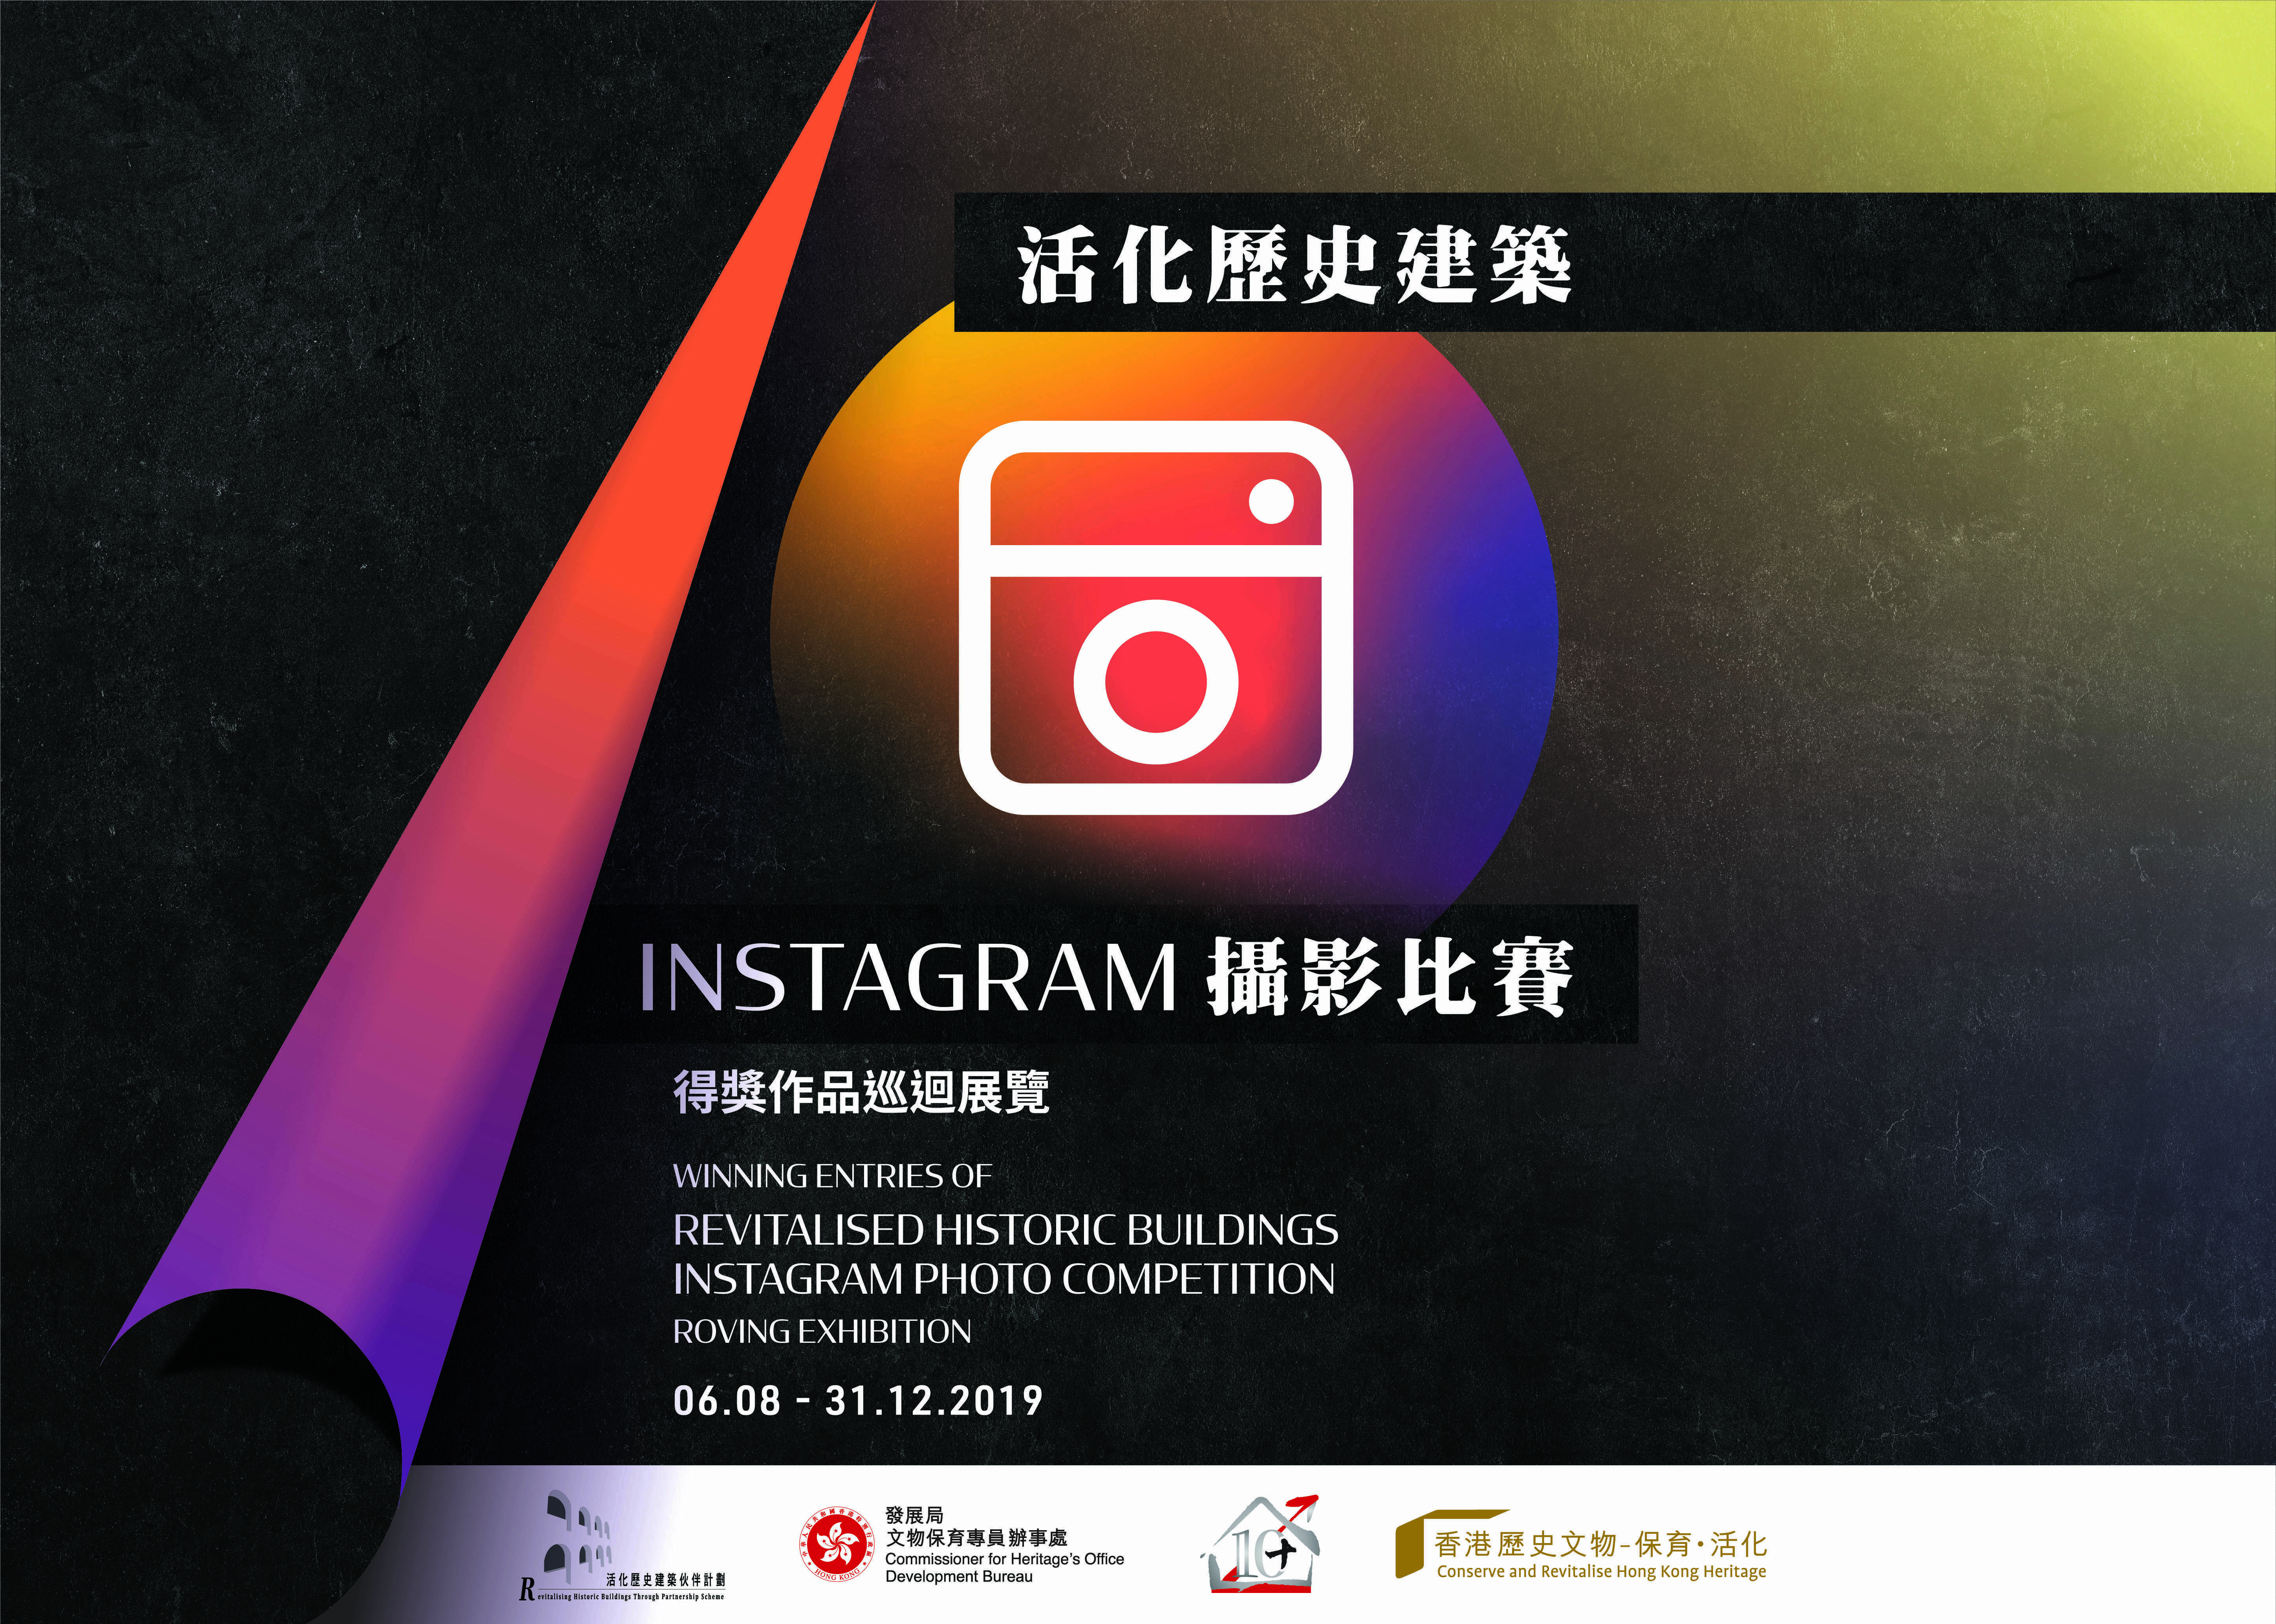 「活化歷史建築Instagram攝影比賽」得獎作品巡迴展覽